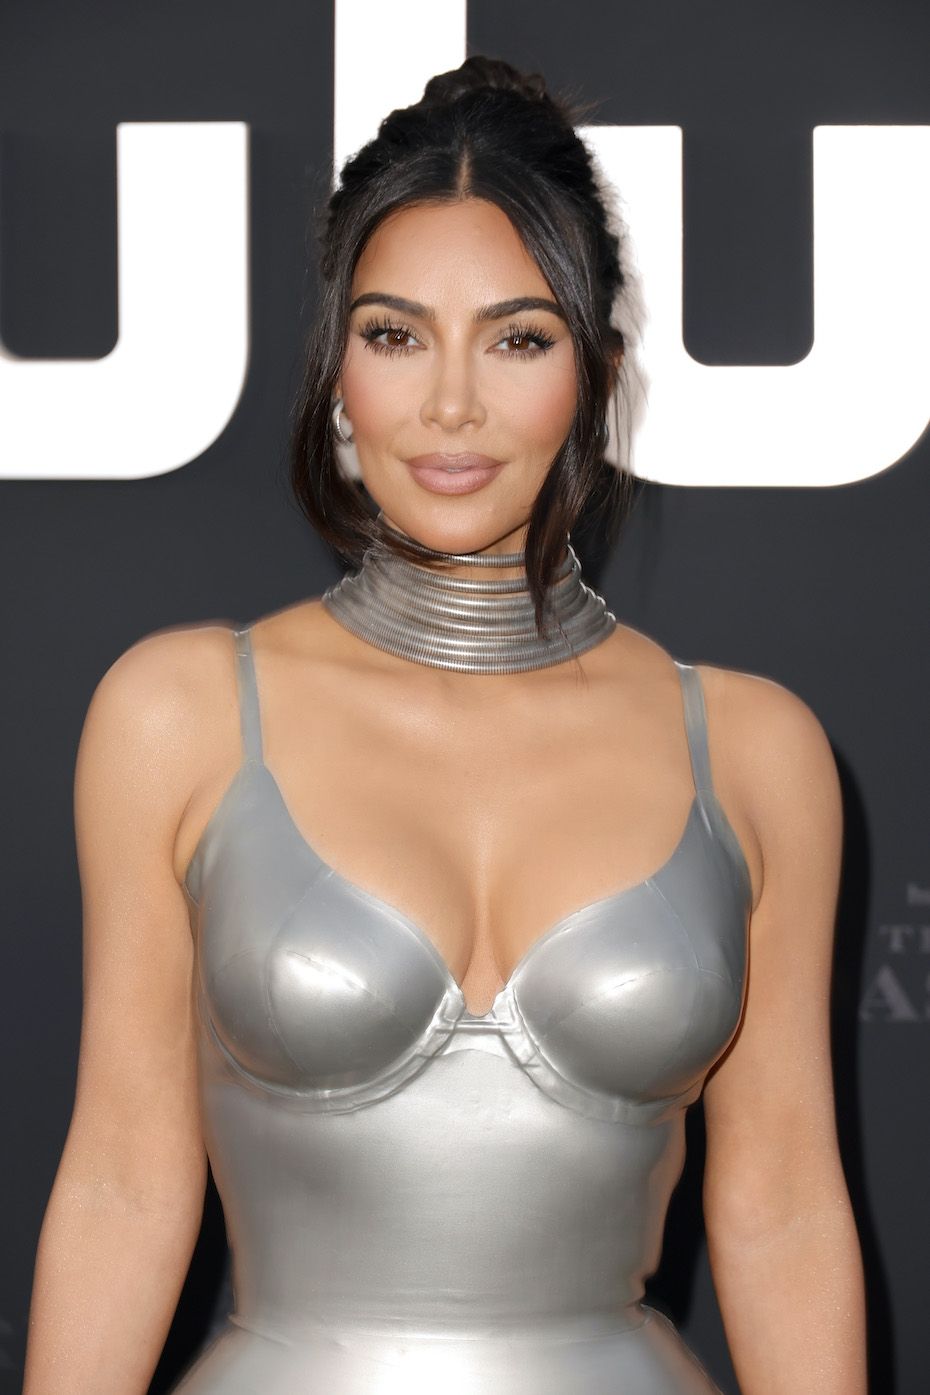 Fans have same reaction to Kim Kardashian's first solo TikTok